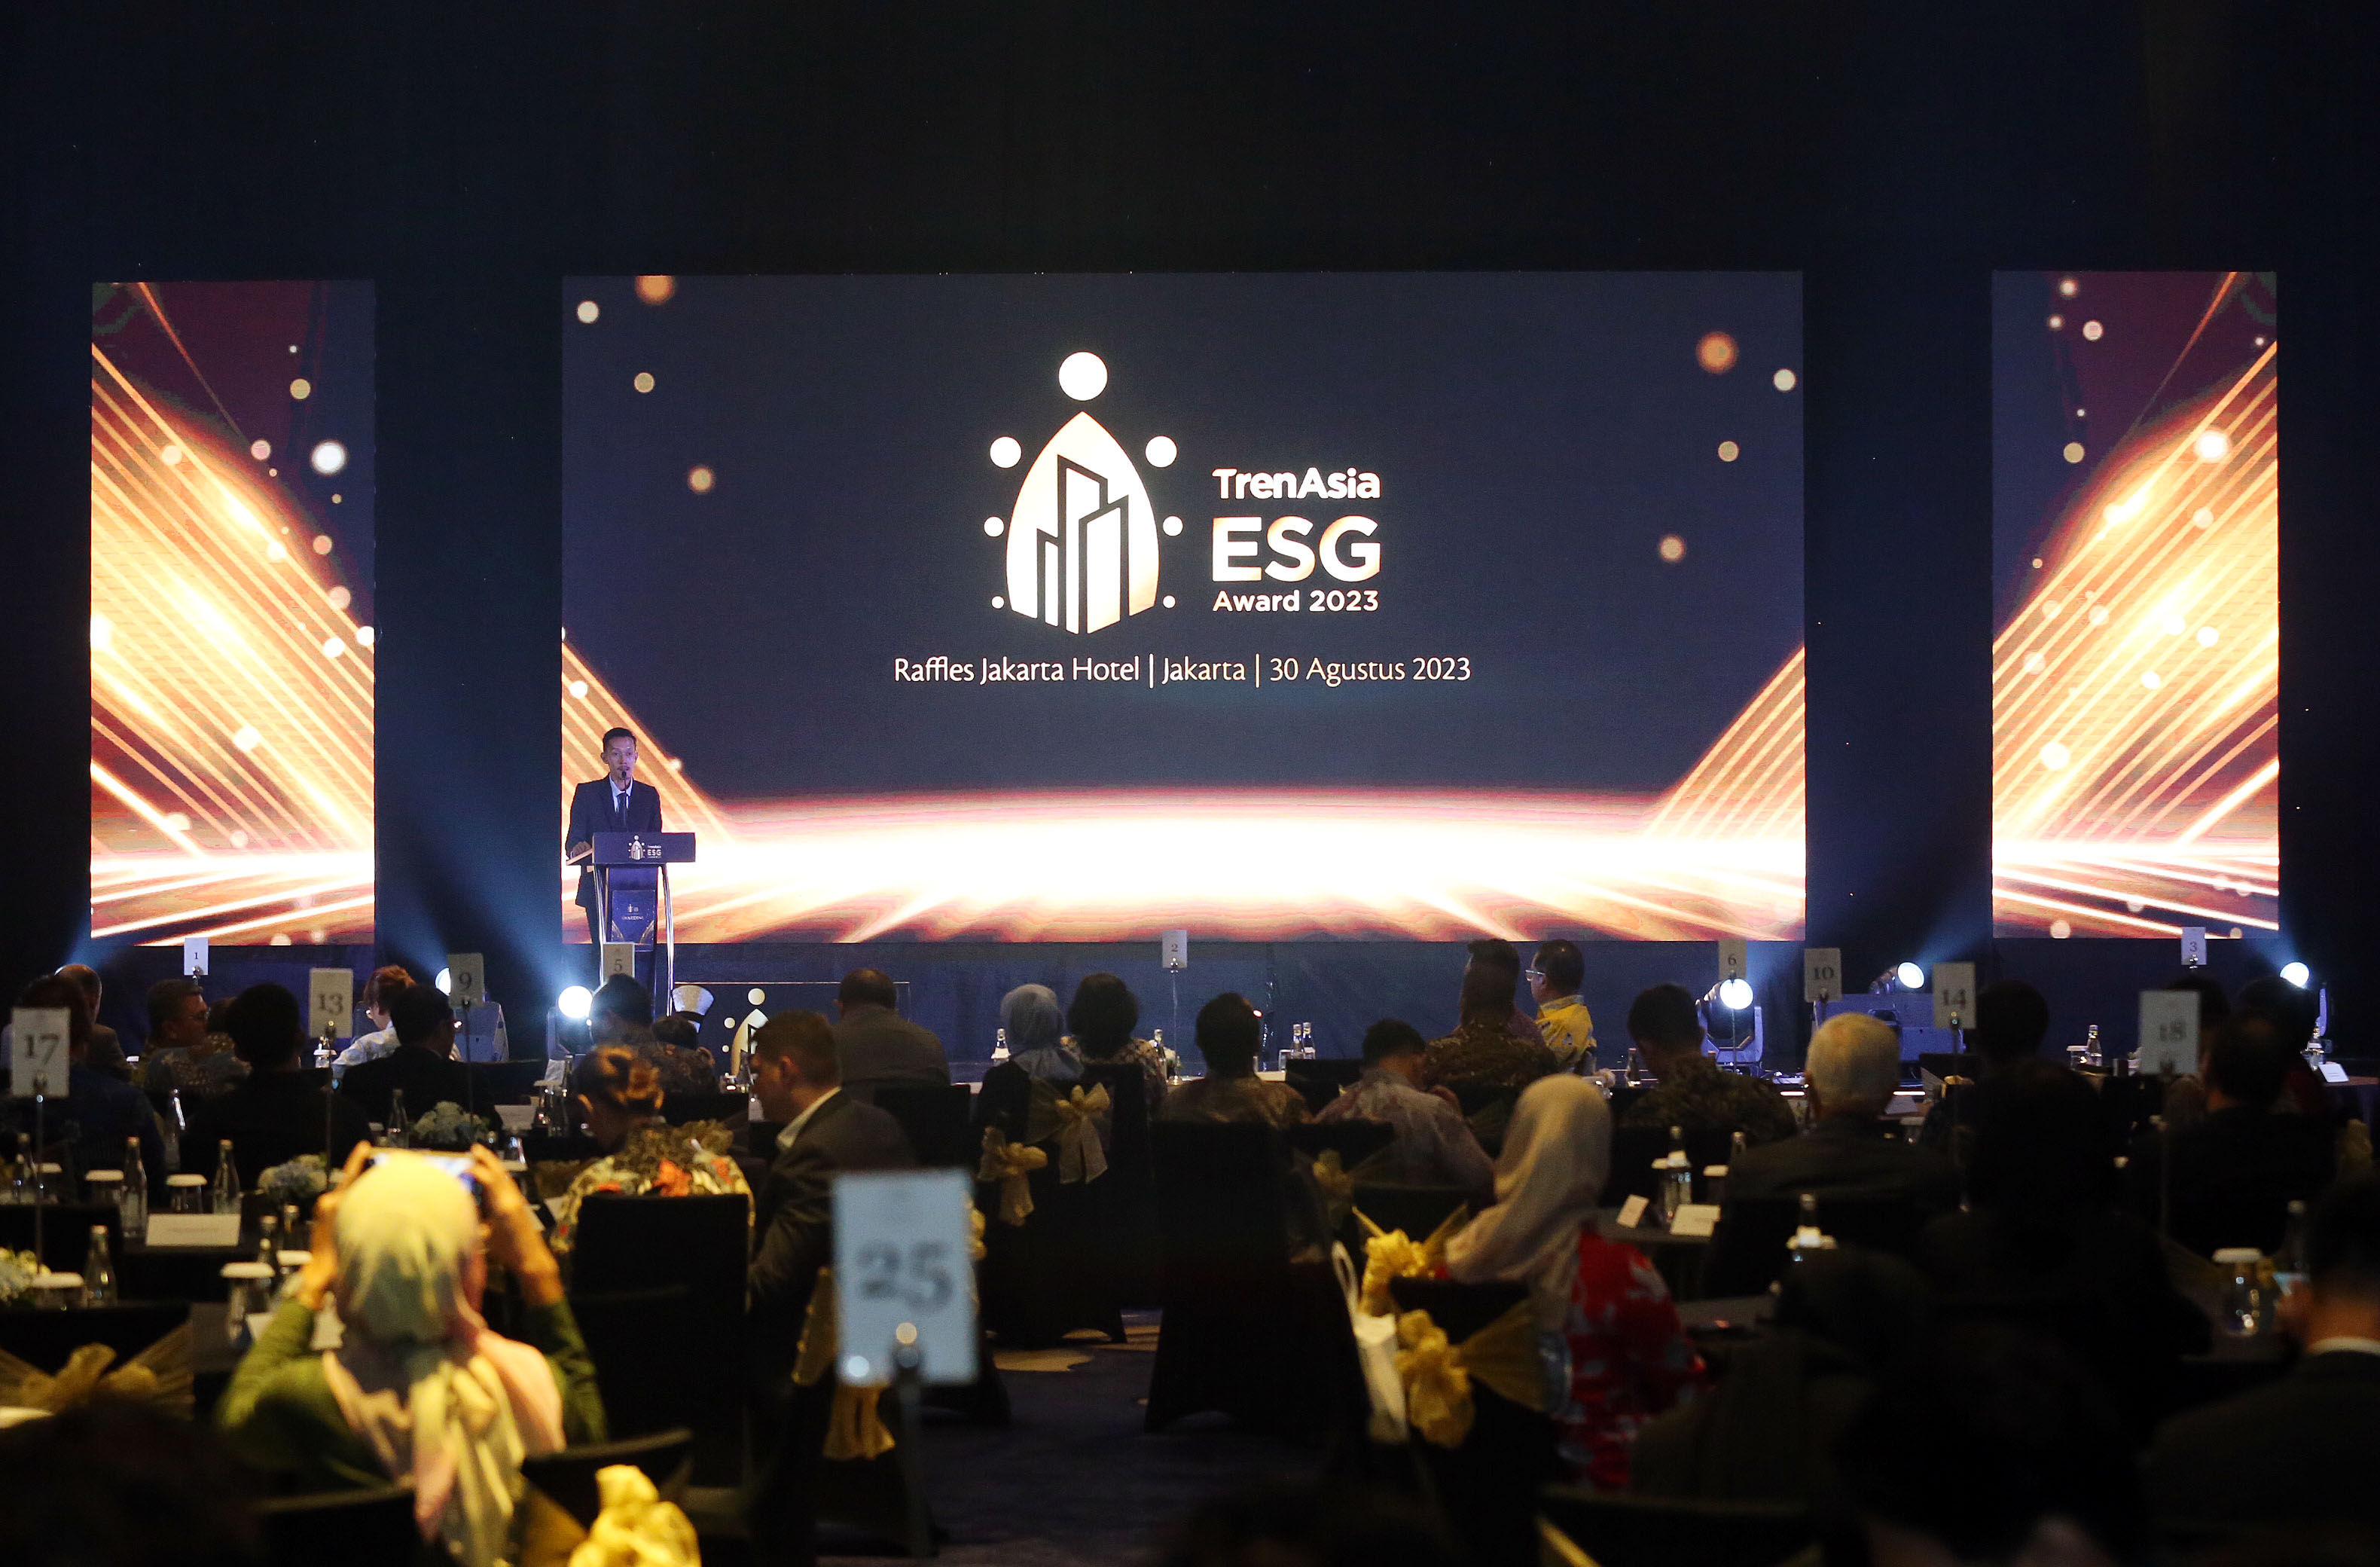 TrenAsia ESG Award 2023 menjadi ajang penghargaan untuk perusahaan-perusahaan yang menerapkan aspek environment, social, and governance (ESG). Sebanyak 58 perusahaan dan 4 CEO meraih penghargaan dalam acara yang digelar di Raffles Hotel Jakarta, pada Rabu, 30 Agustus 2023.